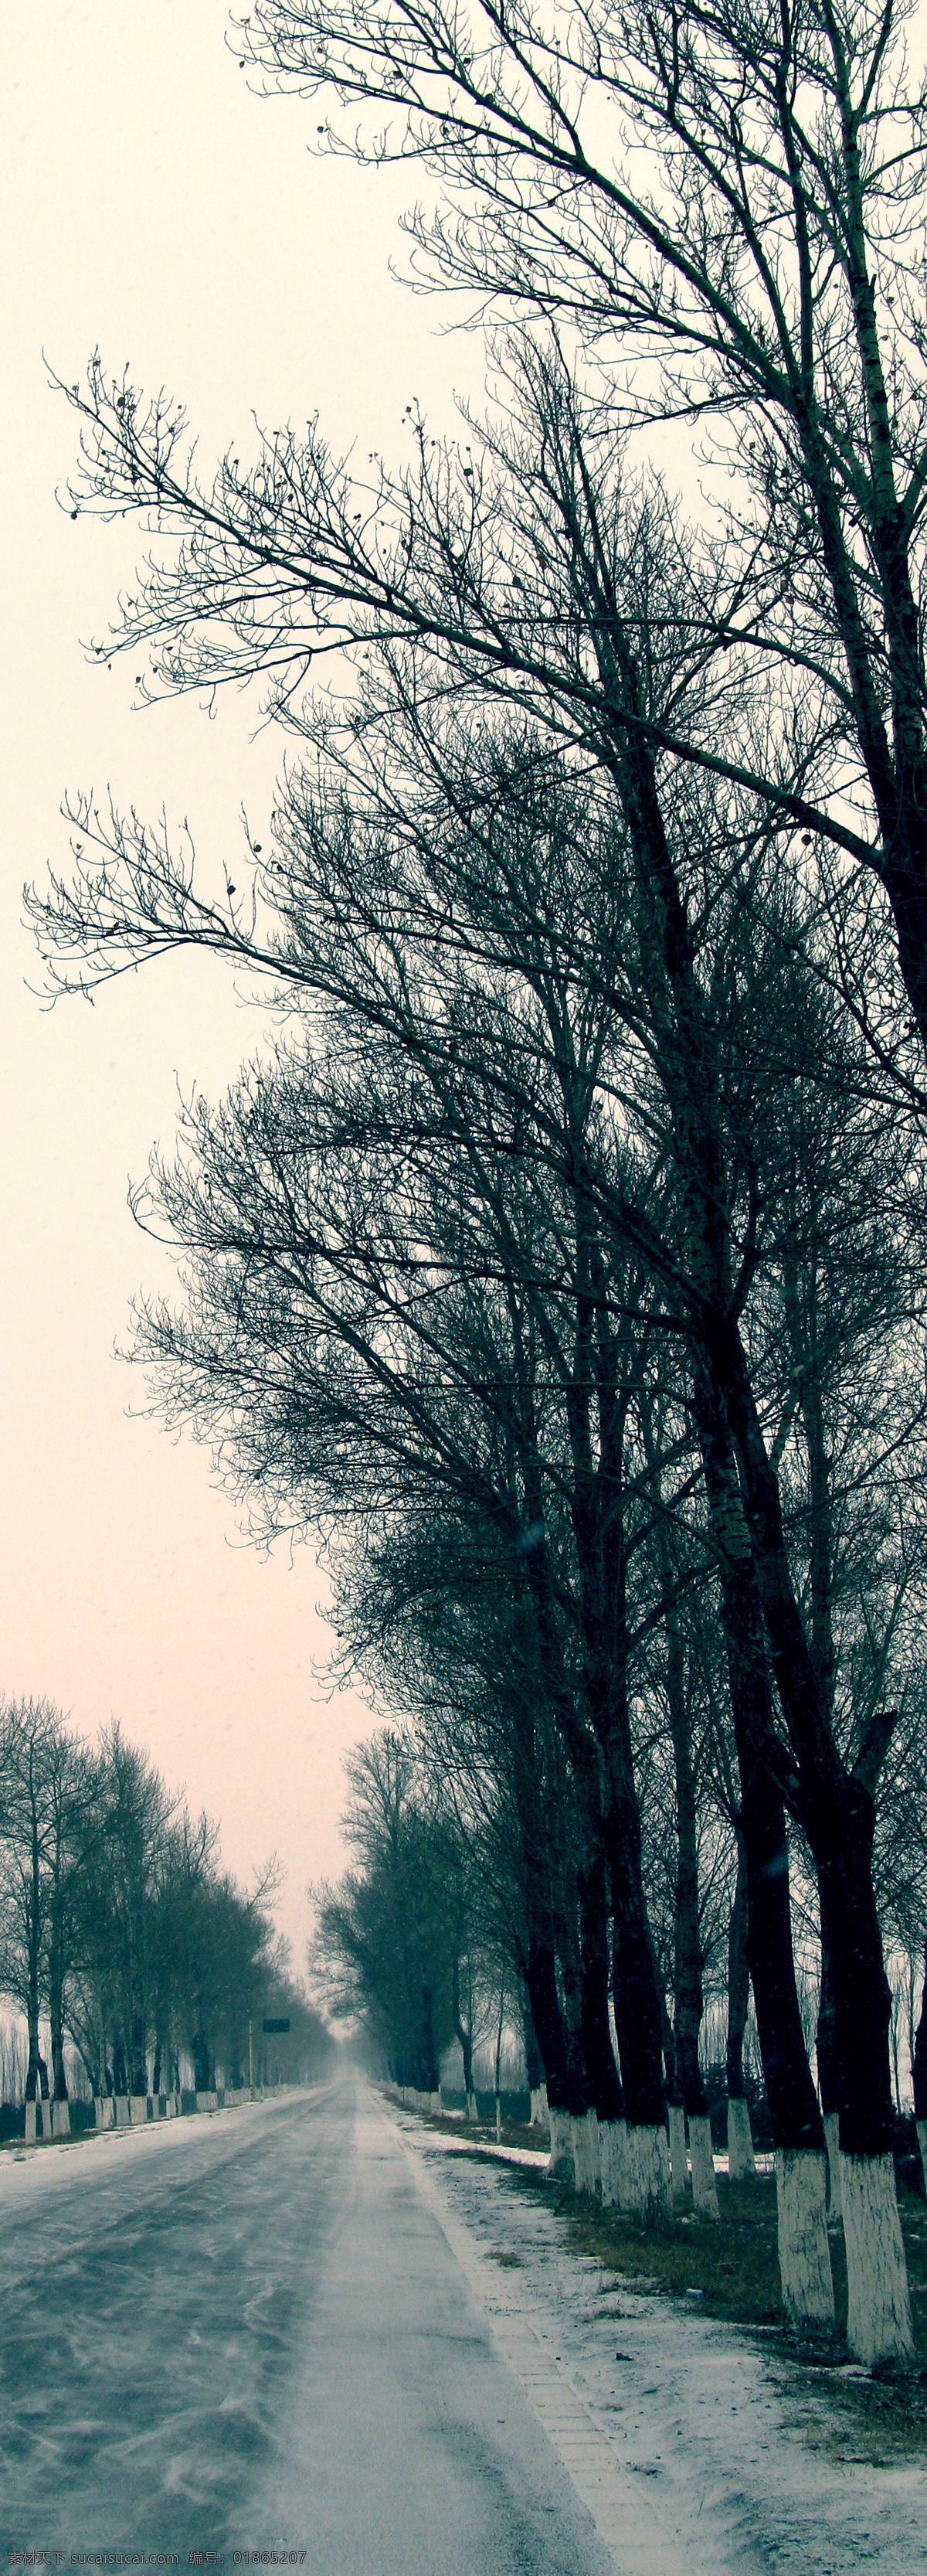 寒冷的马路 马路 冬天 雪景 公路 道路 树木 成排的树 枯树 风光摄影 自然风景 自然景观